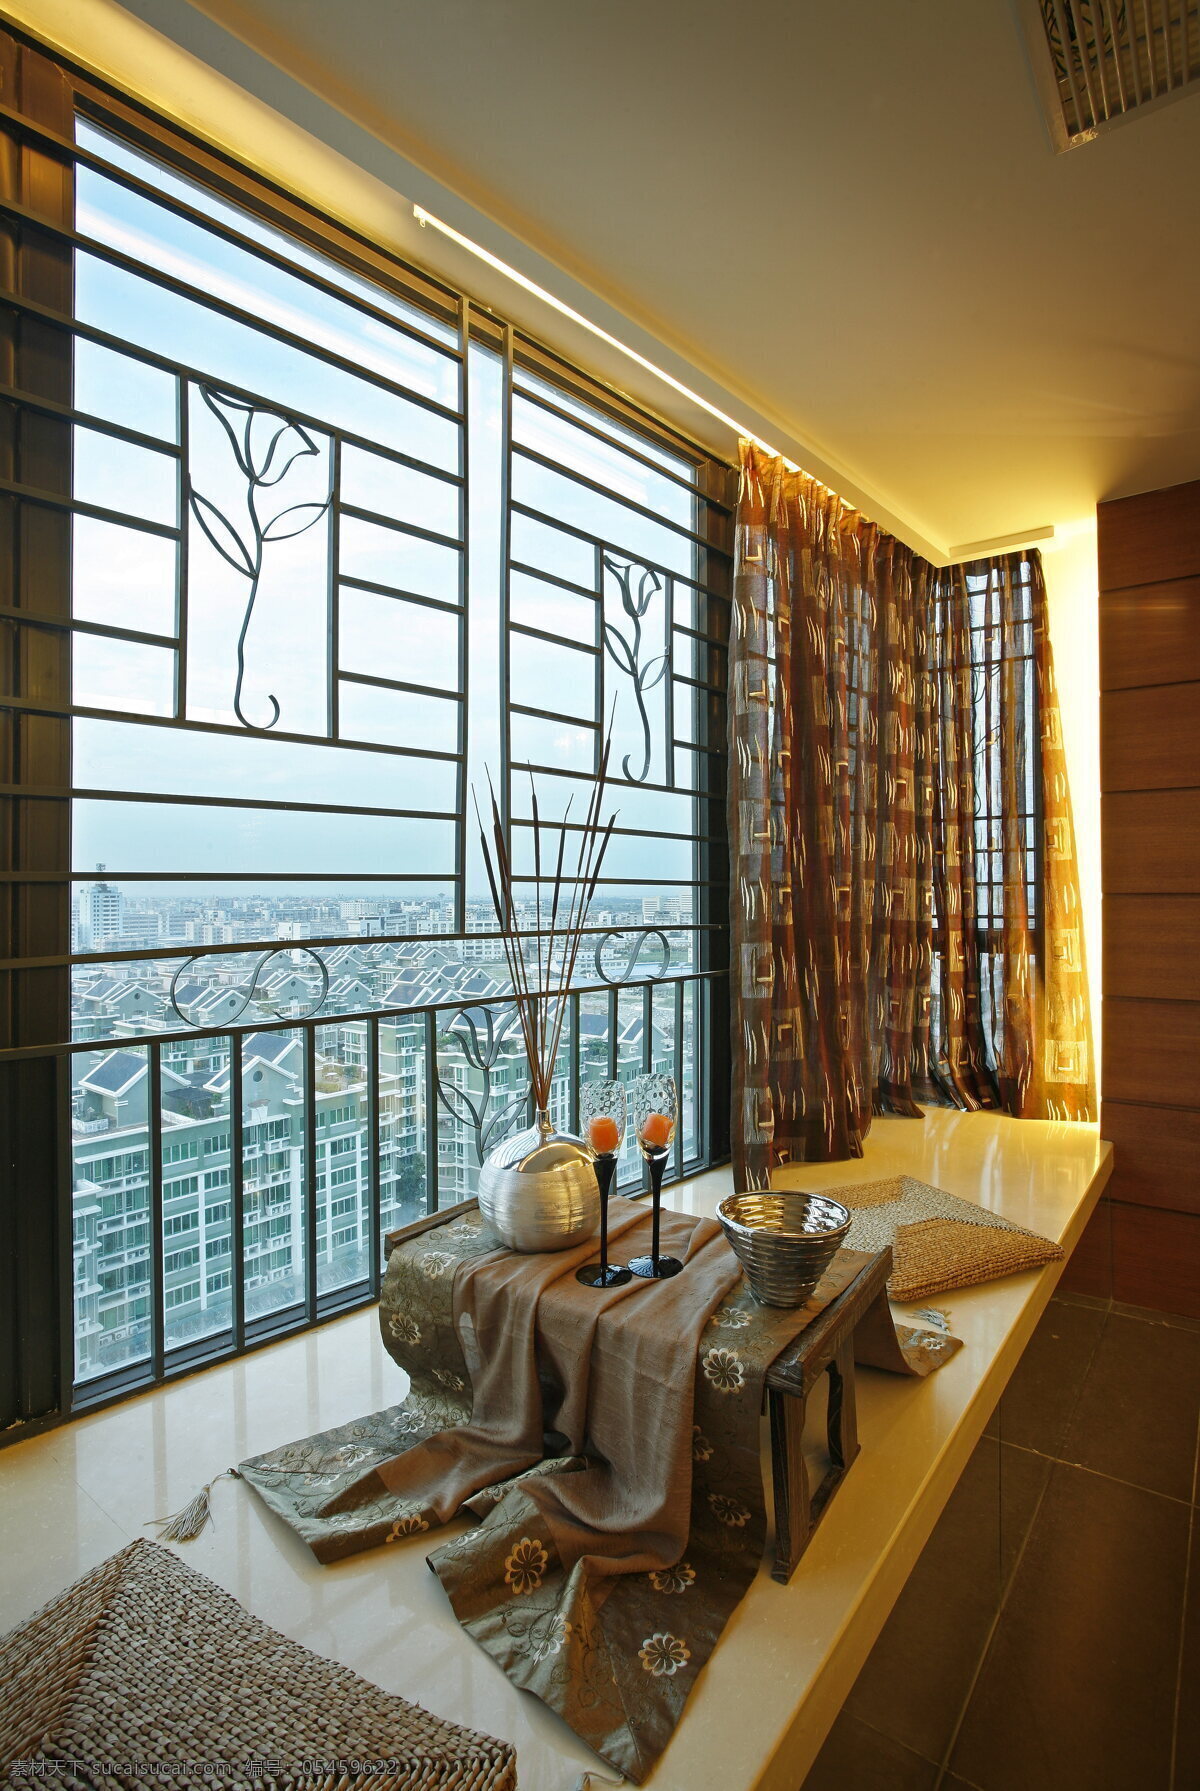 现代 客厅 装修 效果图 家装效果图 欧式风格 欧式 沙发 奢华 设计素材 时尚 室内设计